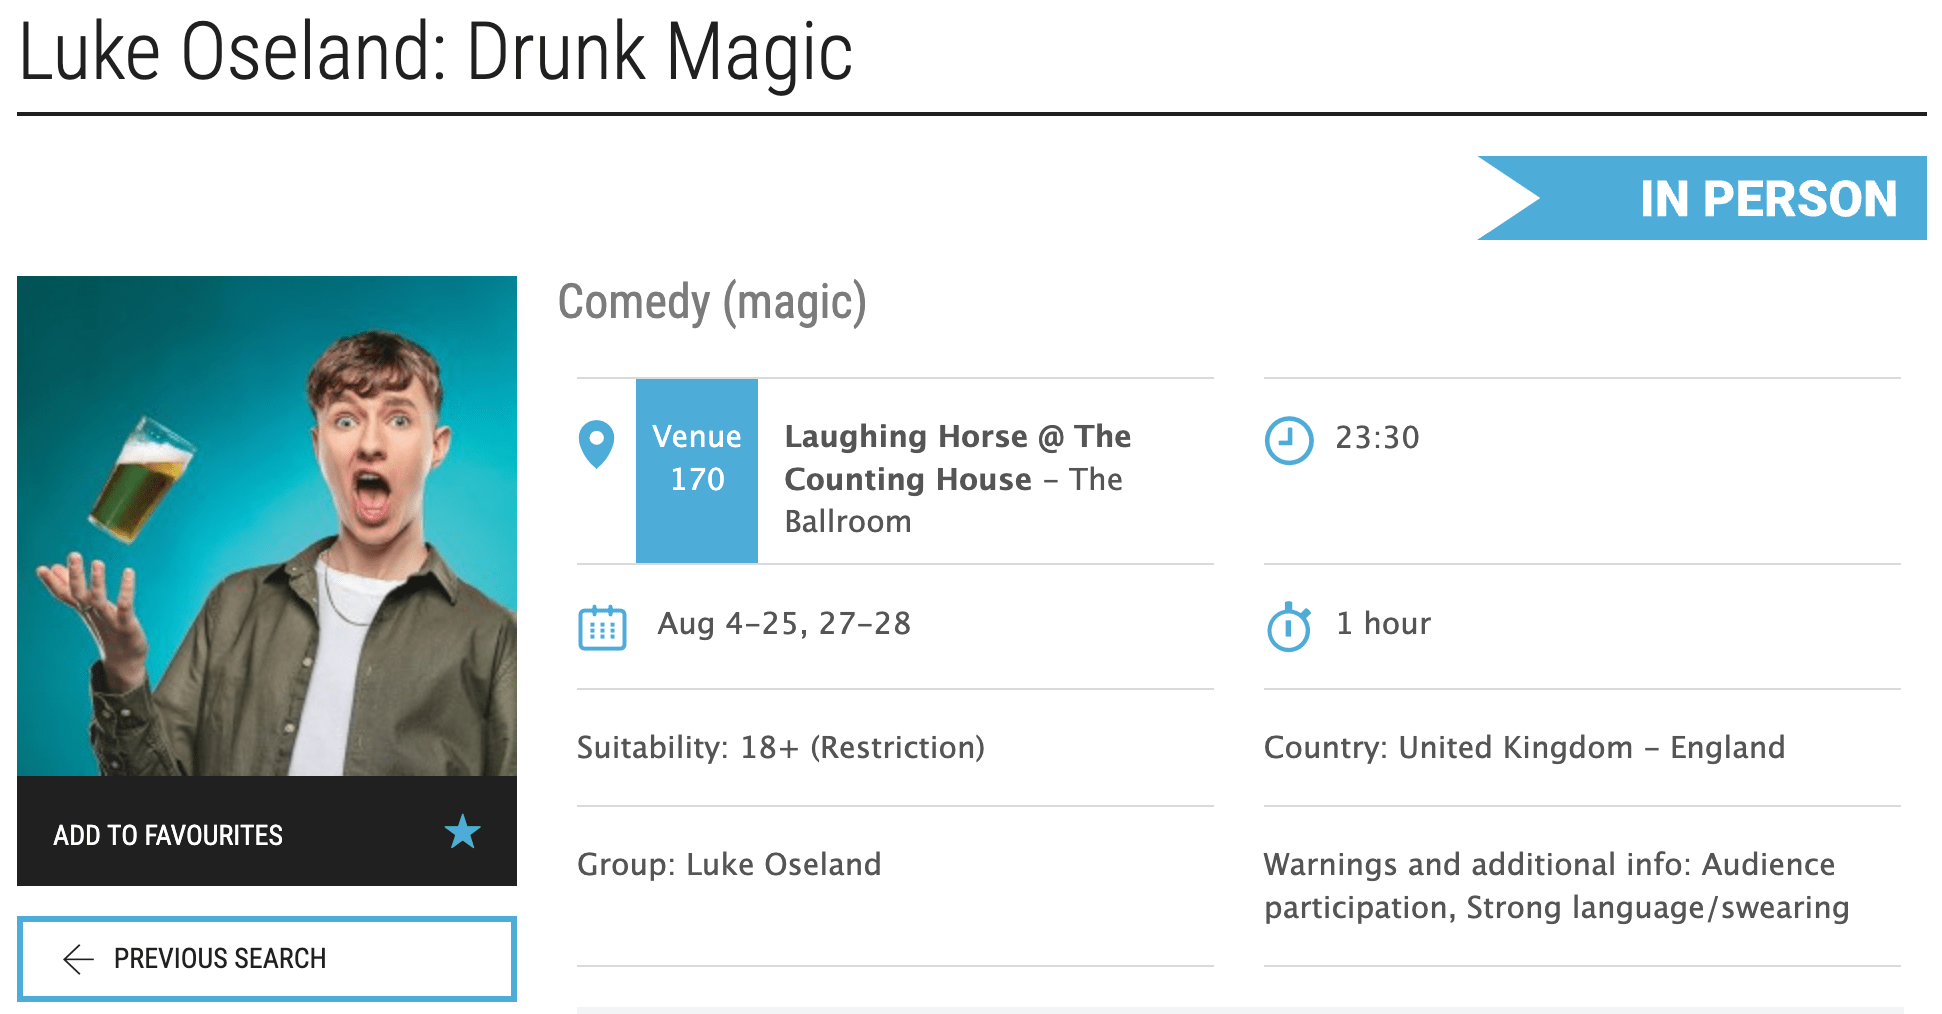 Luke Oseland Drunk Magic - Edinburgh Festival Fringe